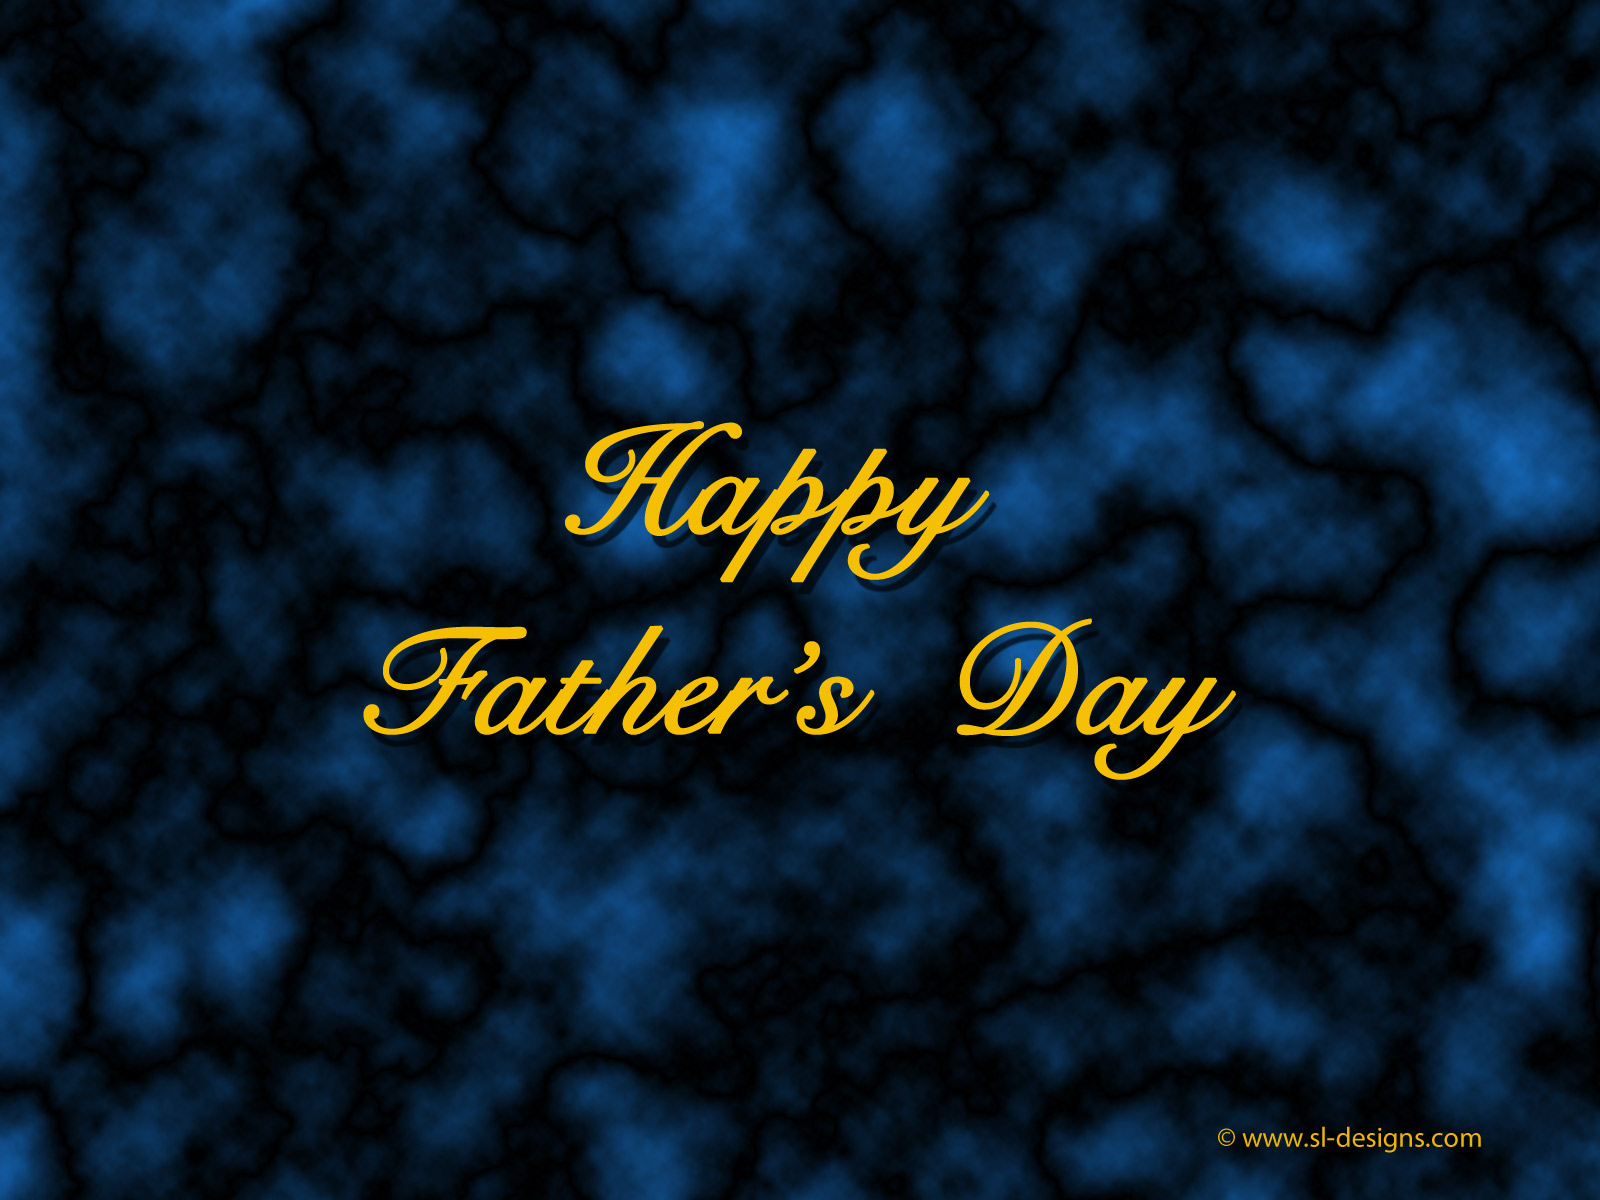 Happy Father's Day wallpaper| SL-Designs